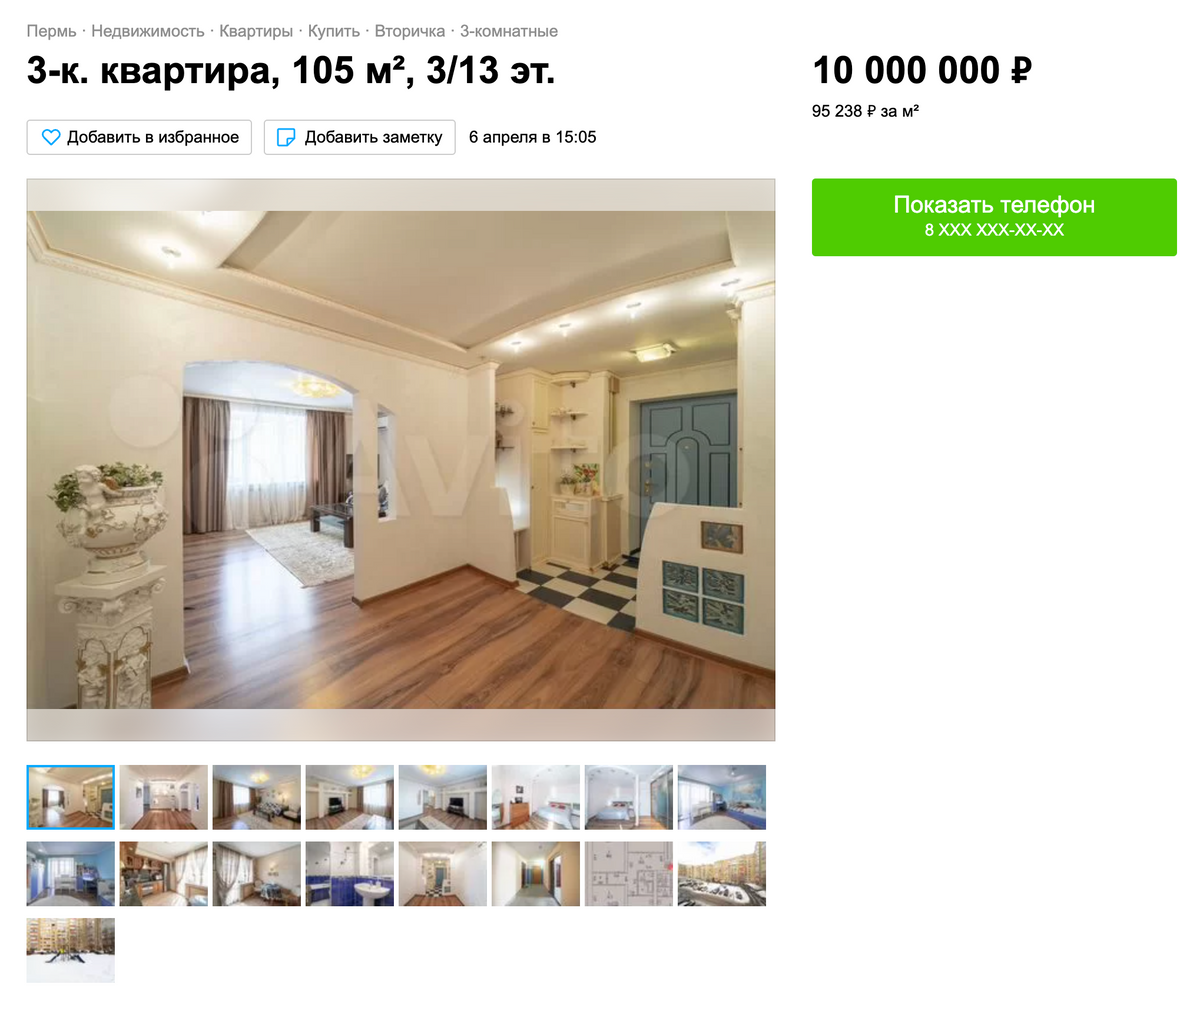 Владельцы этой квартиры отказались чуть скинуть цену, и я нашел более выгодный вариант. Источник: avito.ru